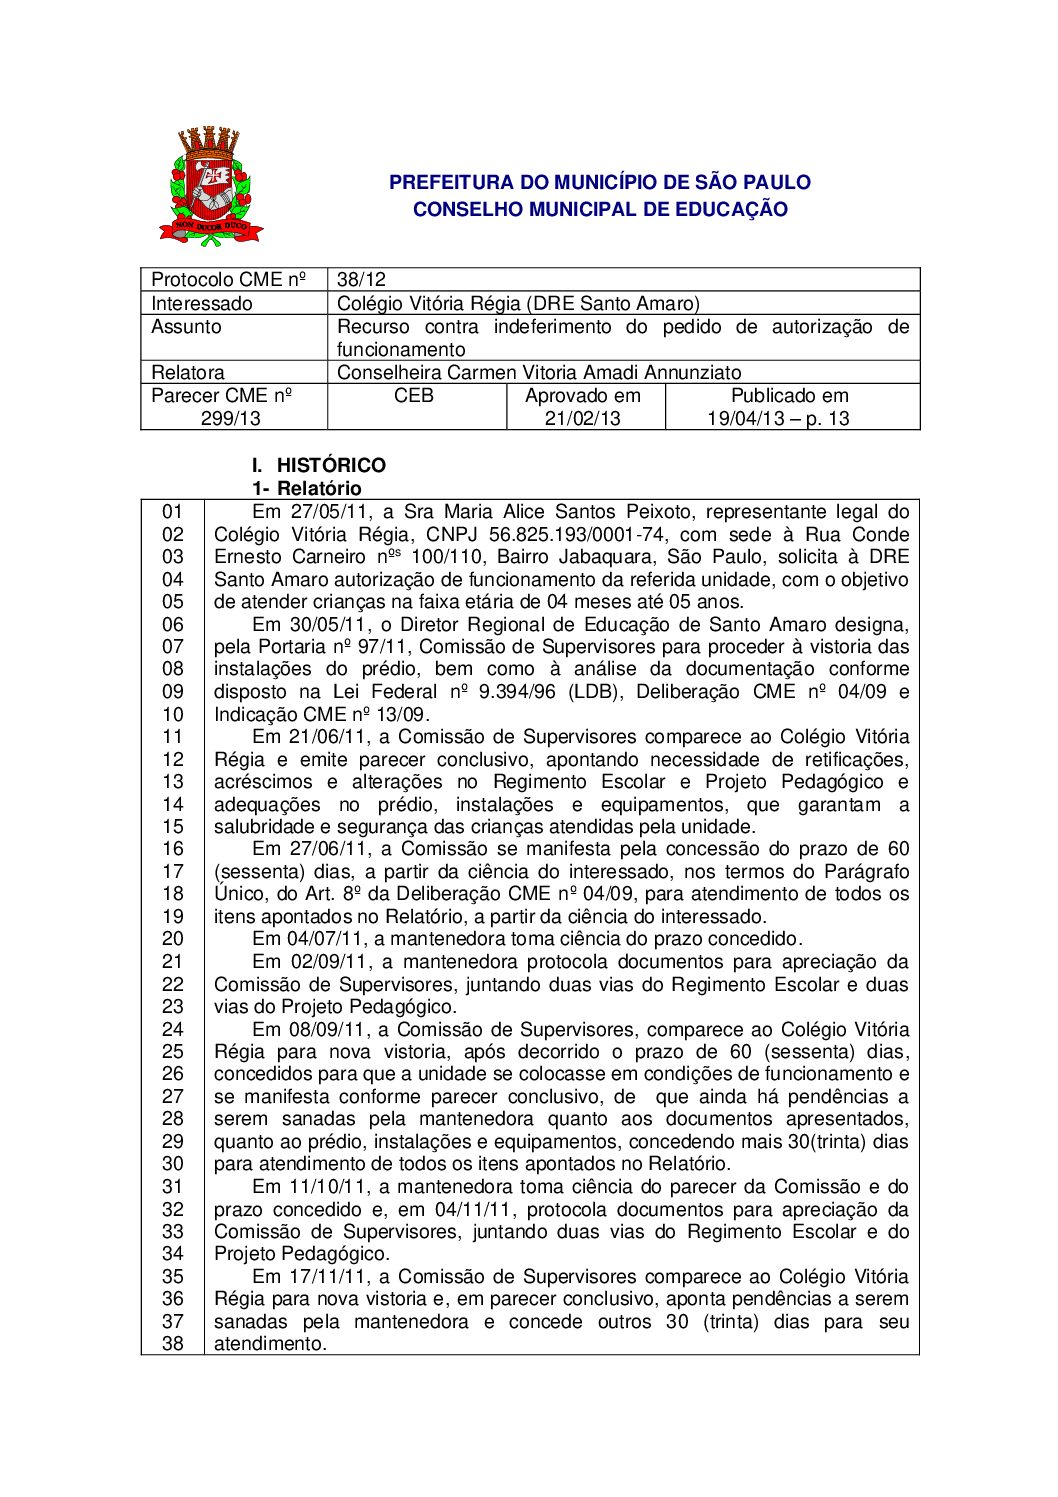 Parecer CME nº 299/2013 - Colégio Vitória Régia (DRE Santo Amaro) - Recurso contra indeferimento do pedido de autorização de funcionamento